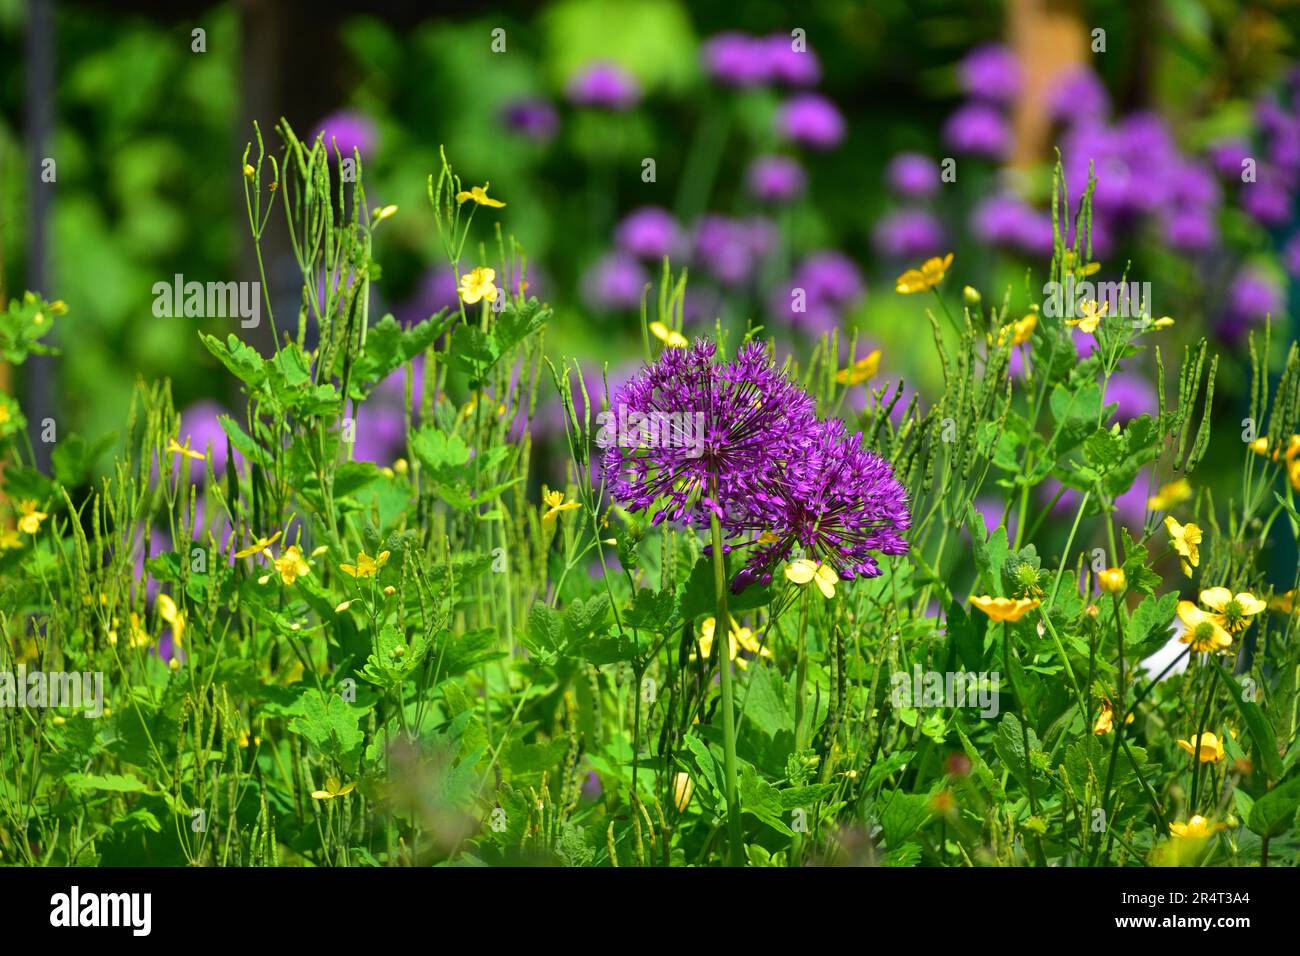 Allium Flower Stock Photo